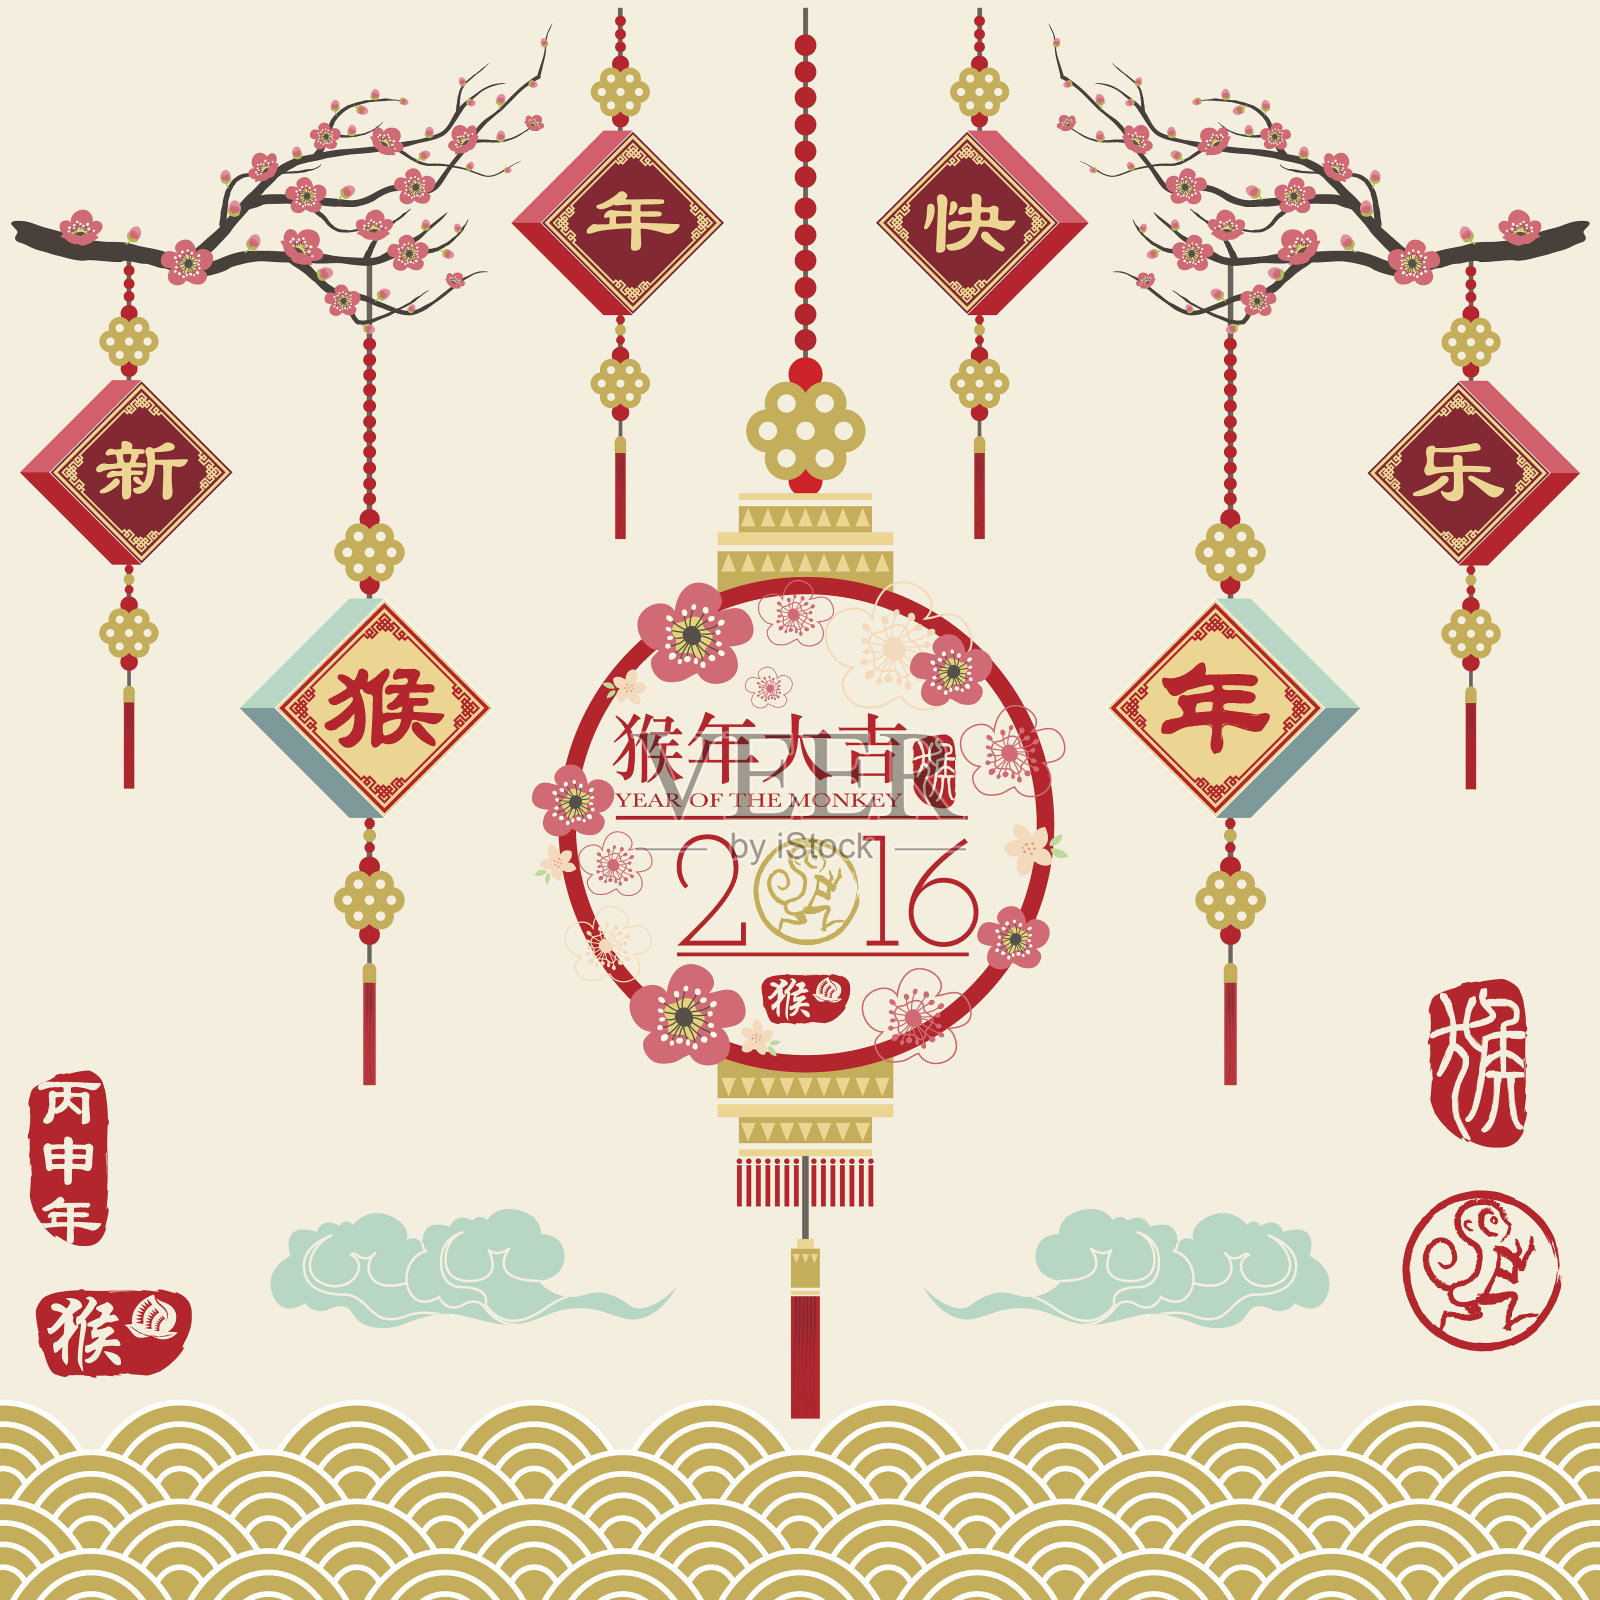 中国新年装饰品系列-插图设计模板素材